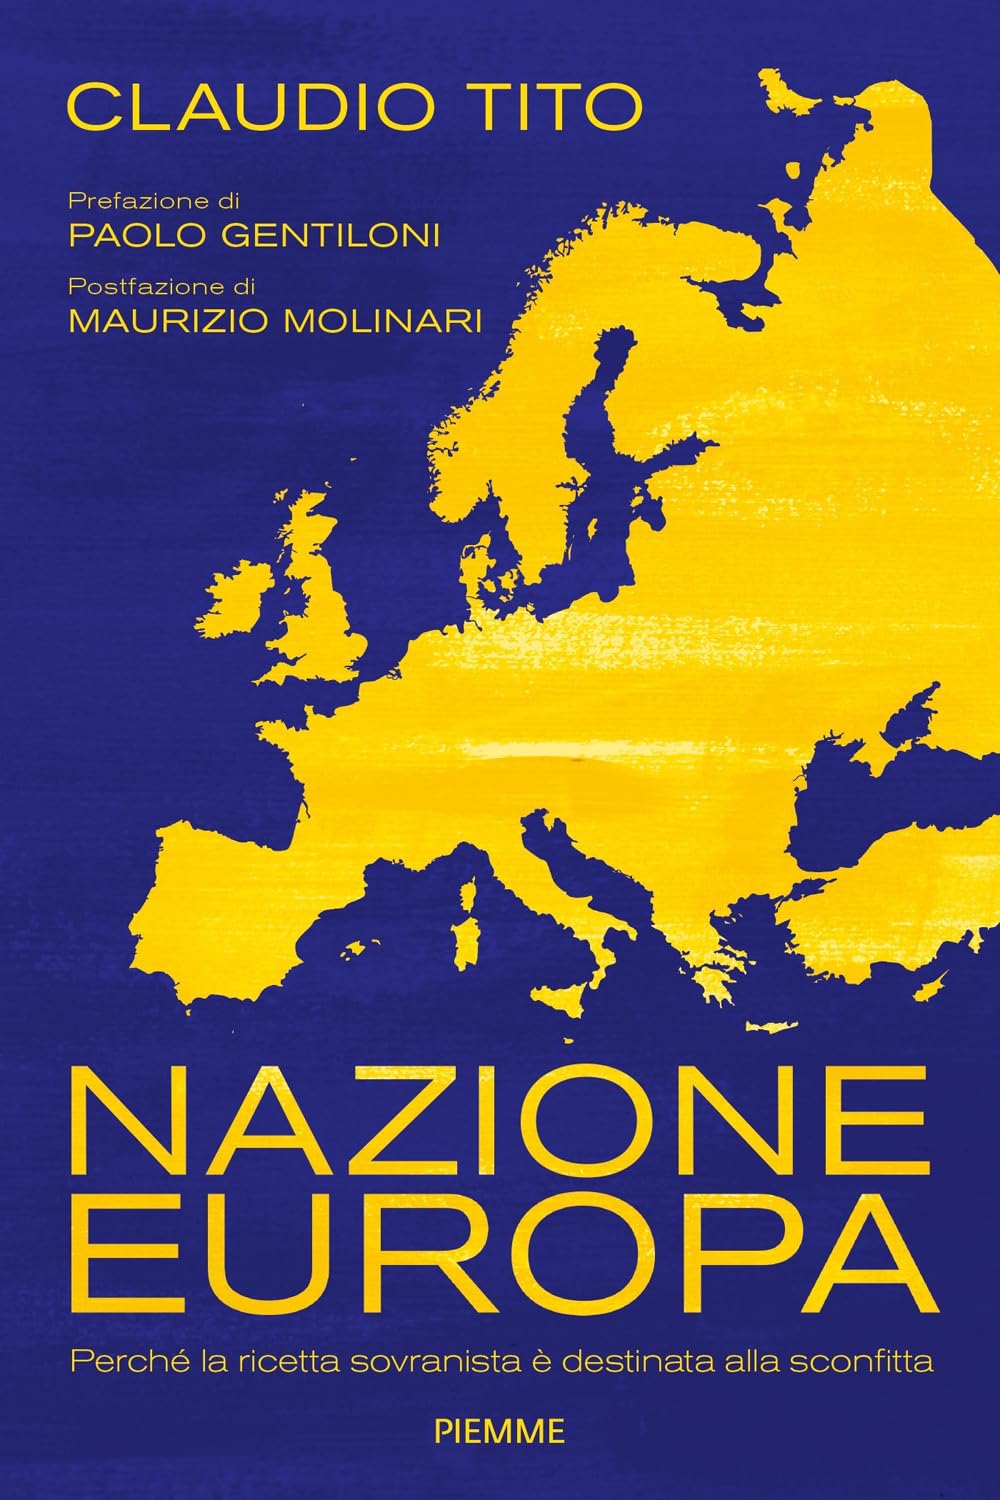 Claudio Tito – Nazione Europa